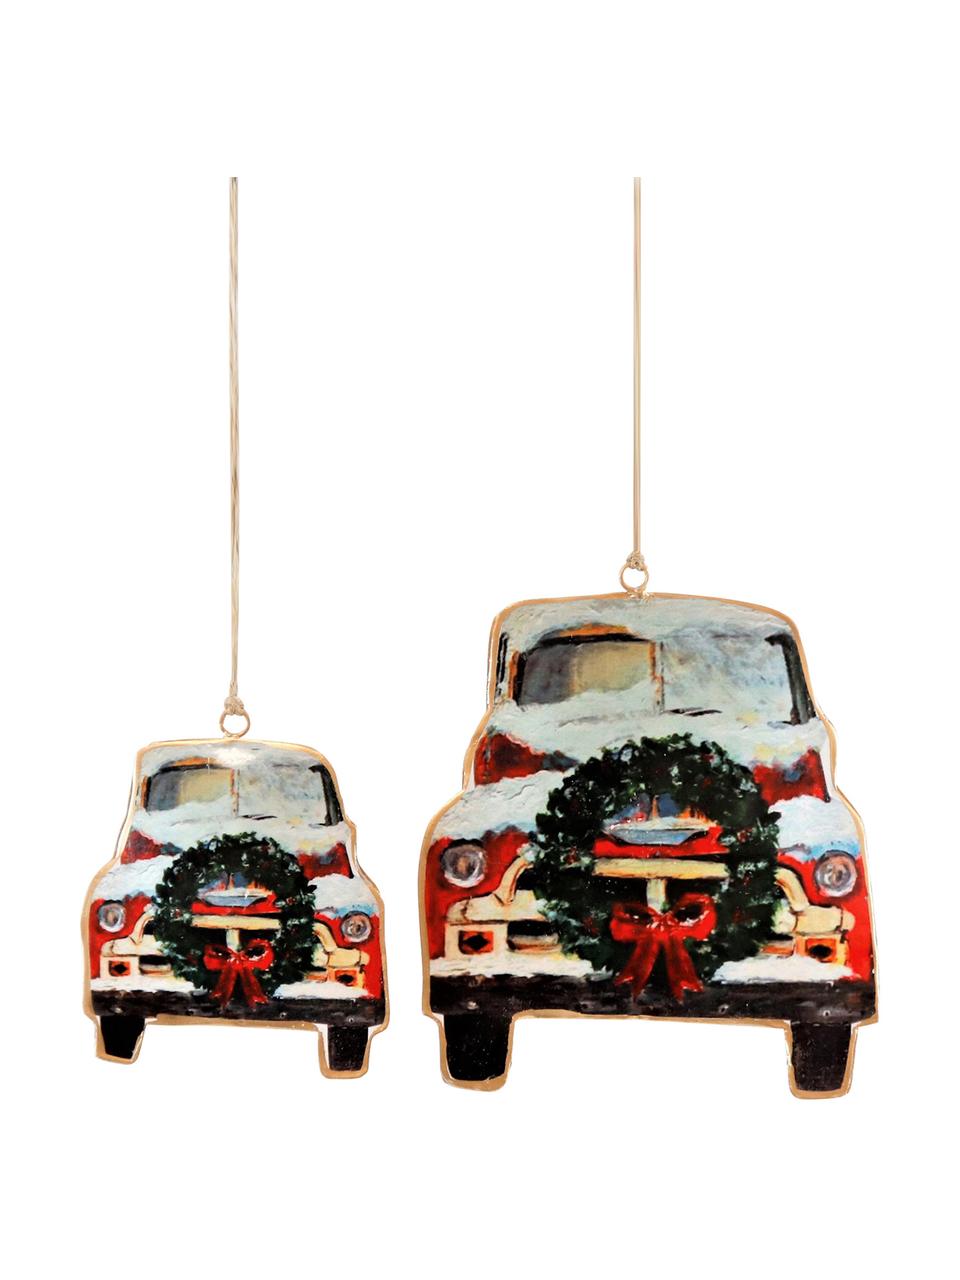 Set de adornos navideños Cars, 2 uds., Figura: metal, Rojo, negro, blanco, Set de diferentes tamaños